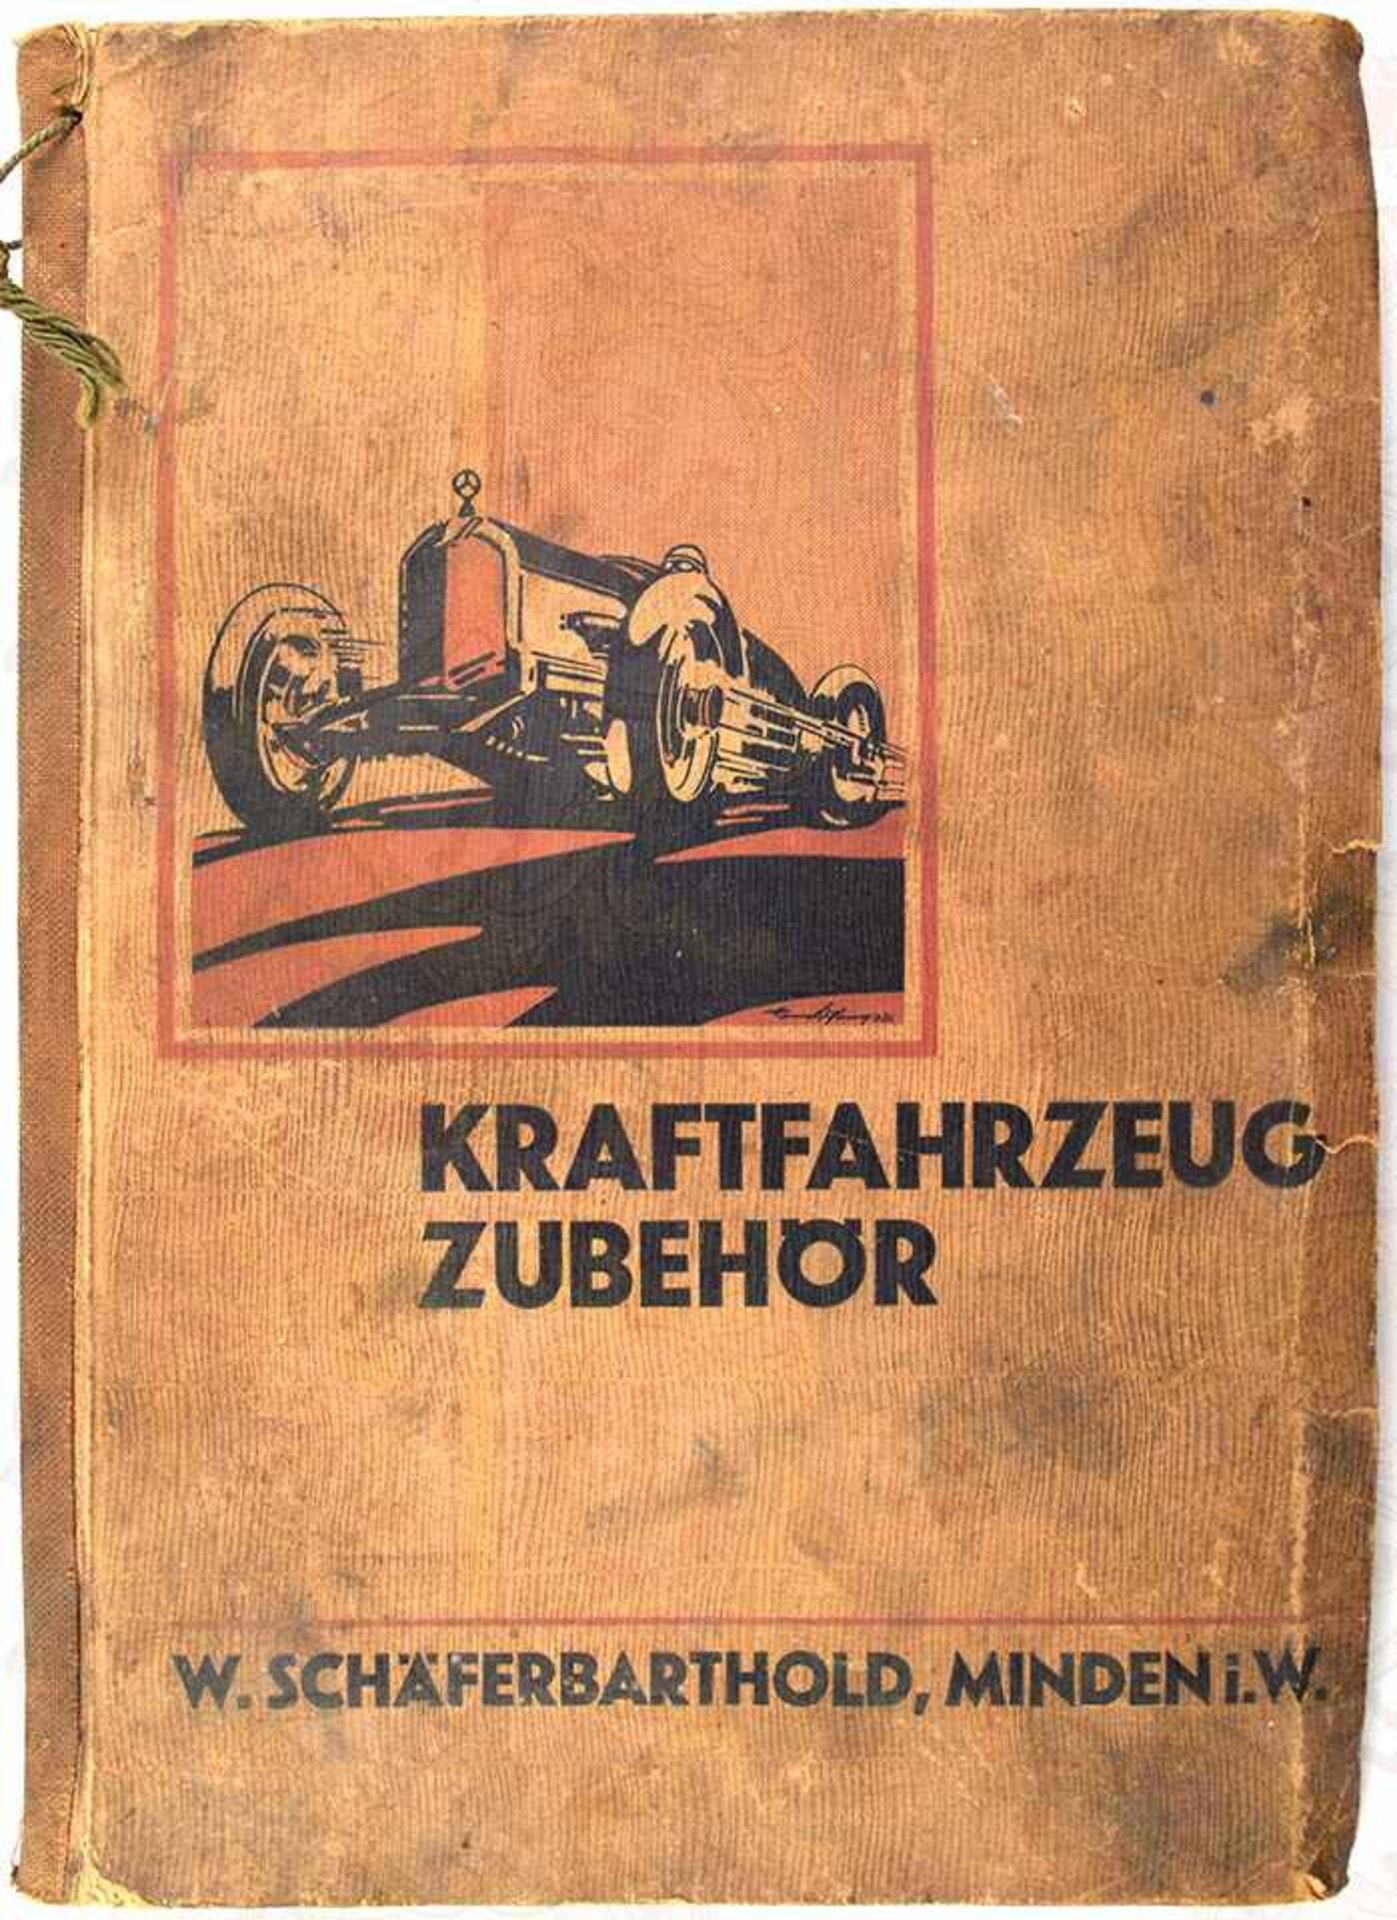 FIRMENKATALOG KRAFTFAHRZEUG-ZUBEHÖR, W. Schäferbarthold, Minden/Westfalen, Ausgabe 1933,